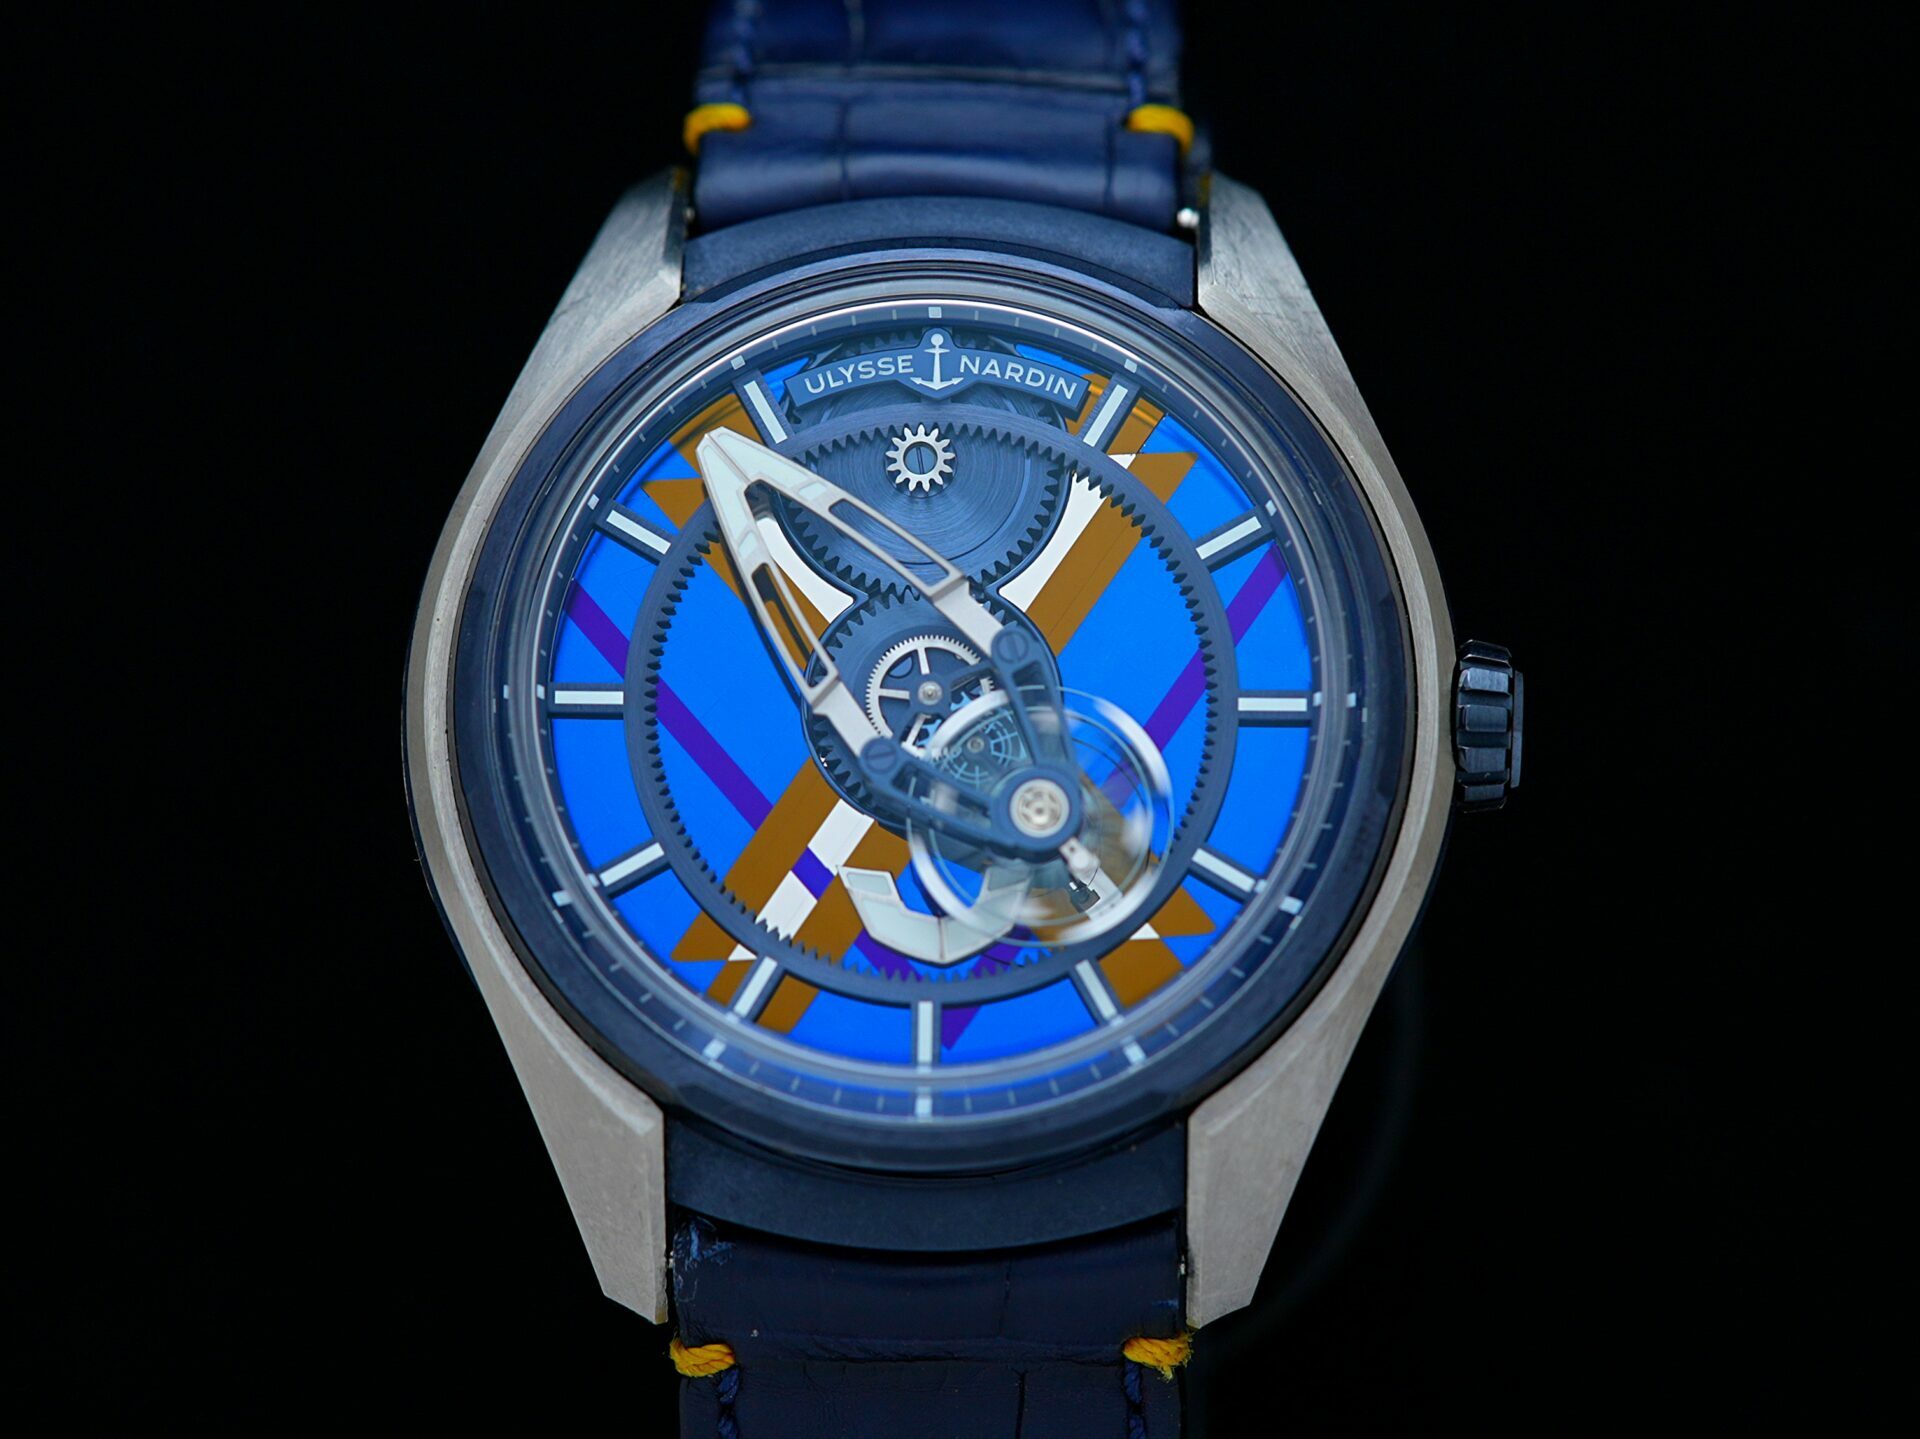 Ulysse Nardin Freak X Marquetry watch displayed under white lighting.